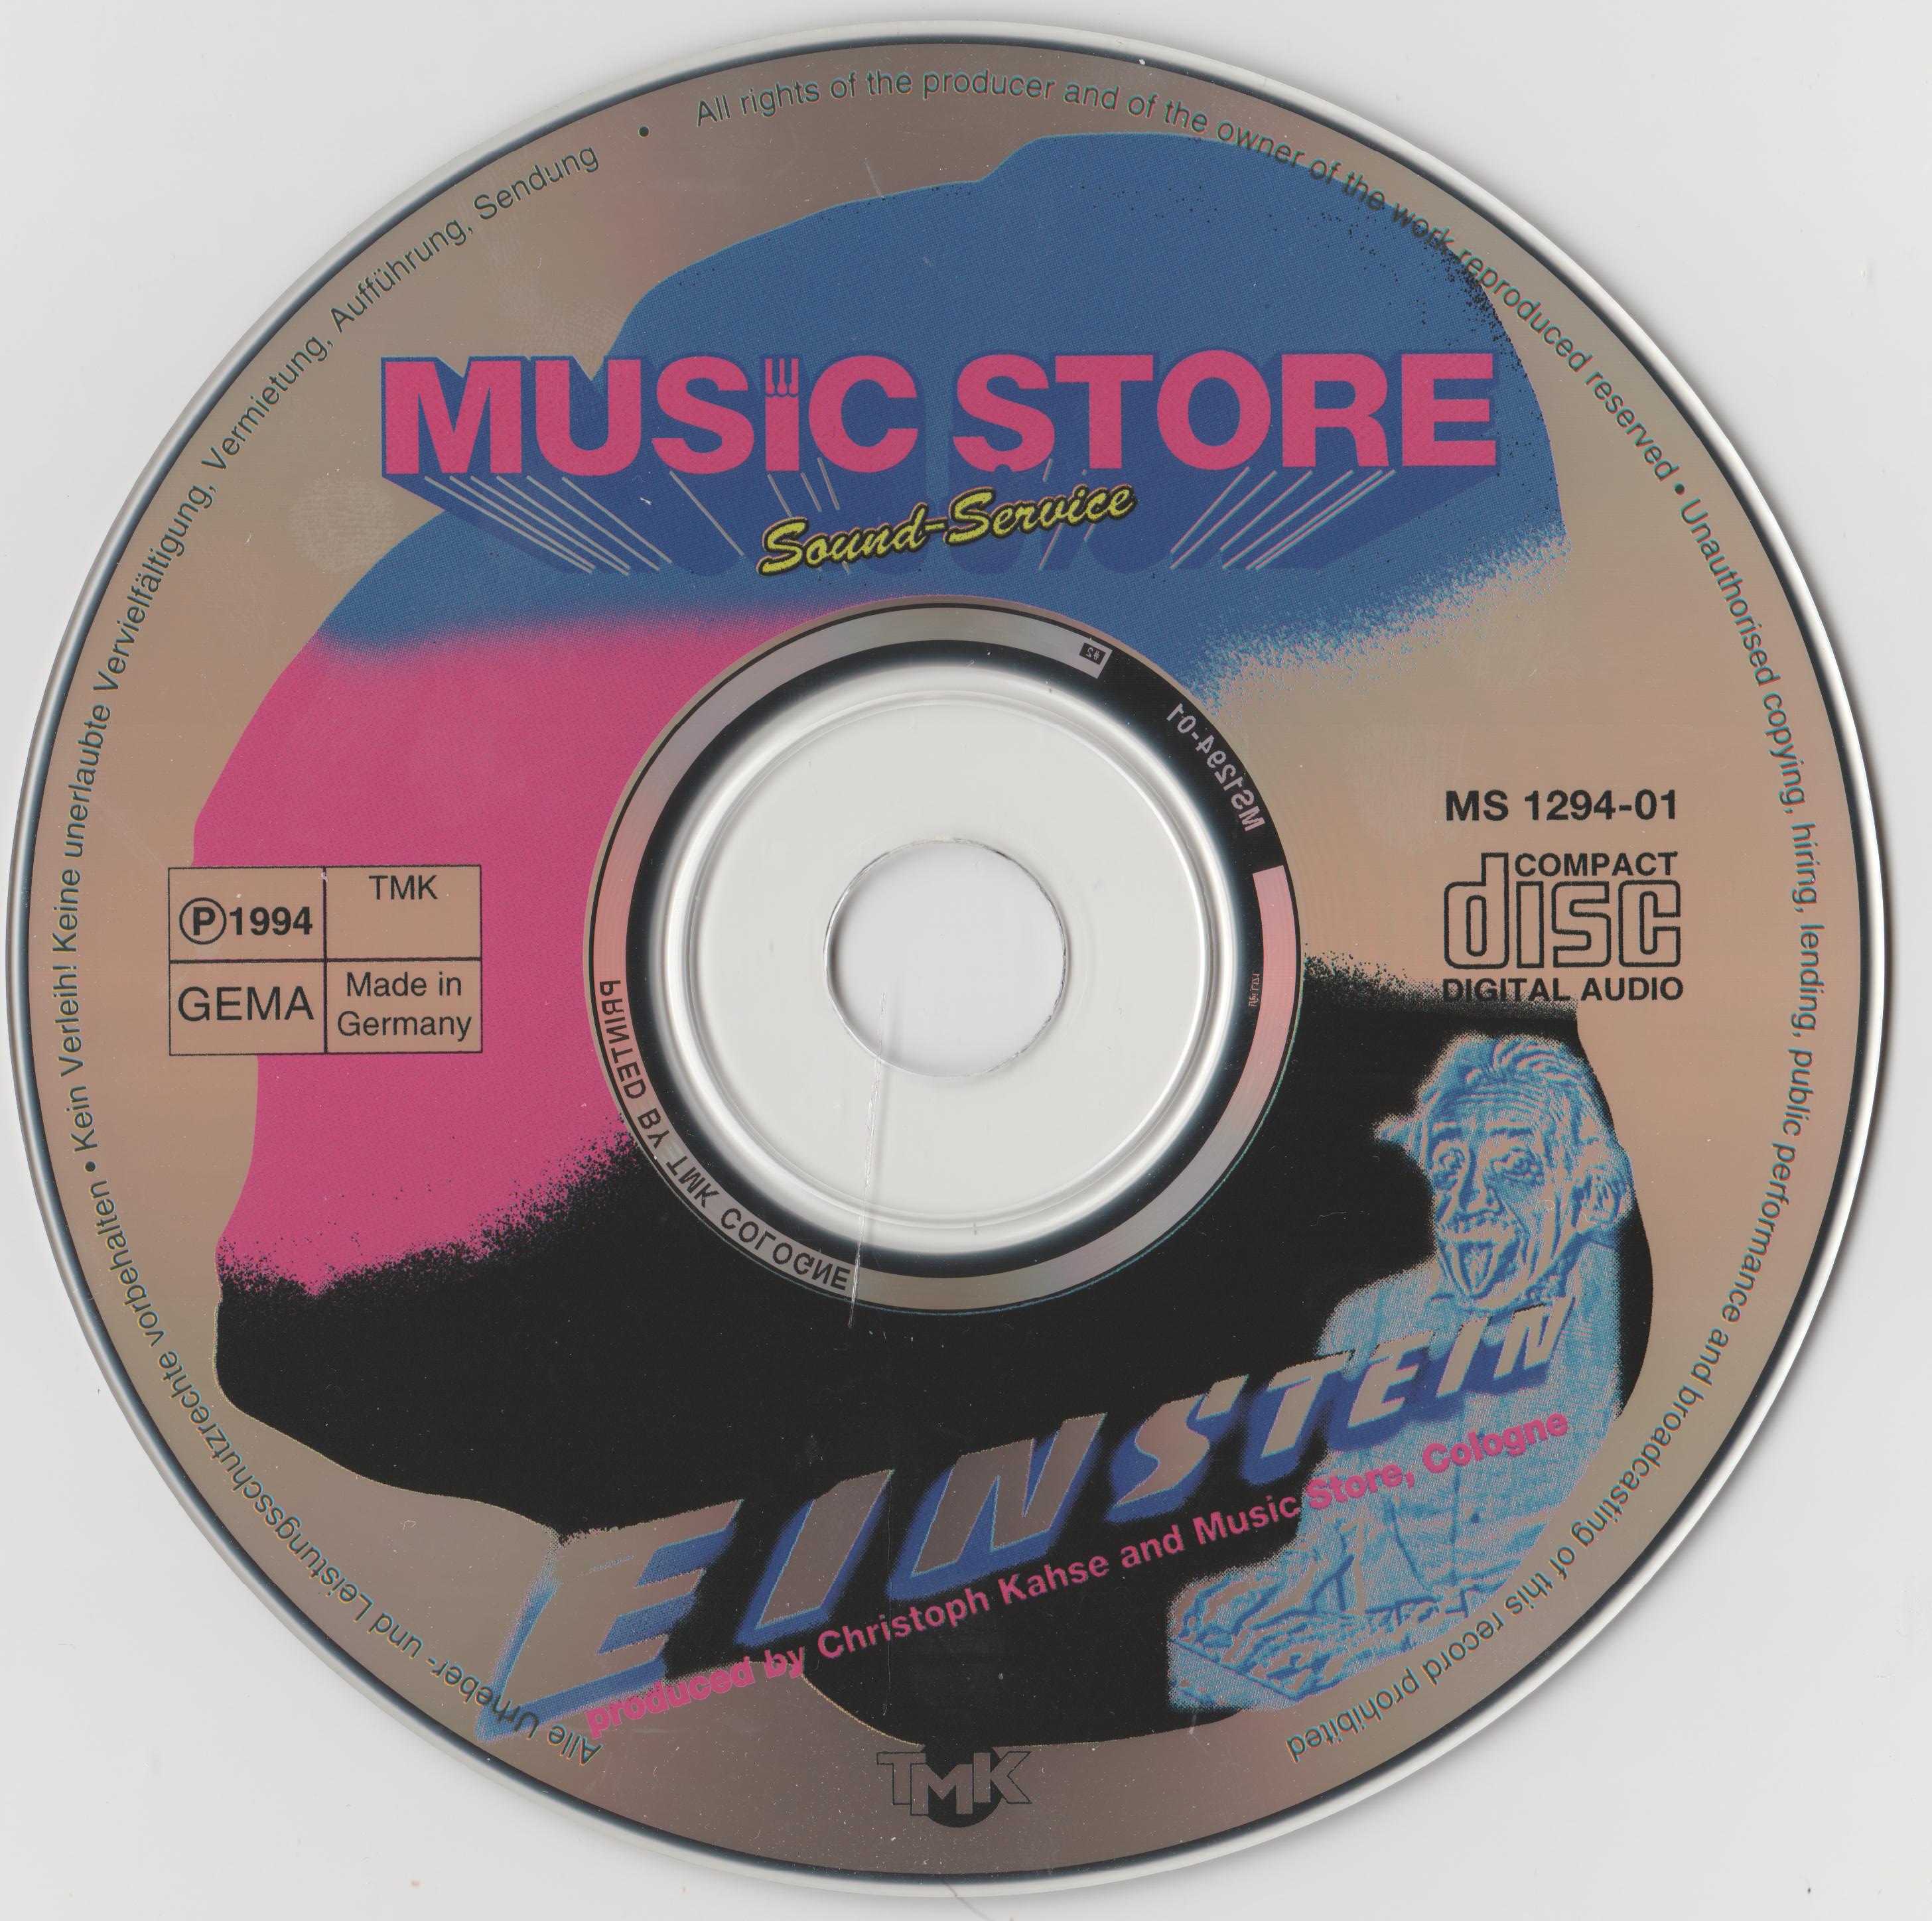 1994 Music Store-Einstein-Akai sampling CD 